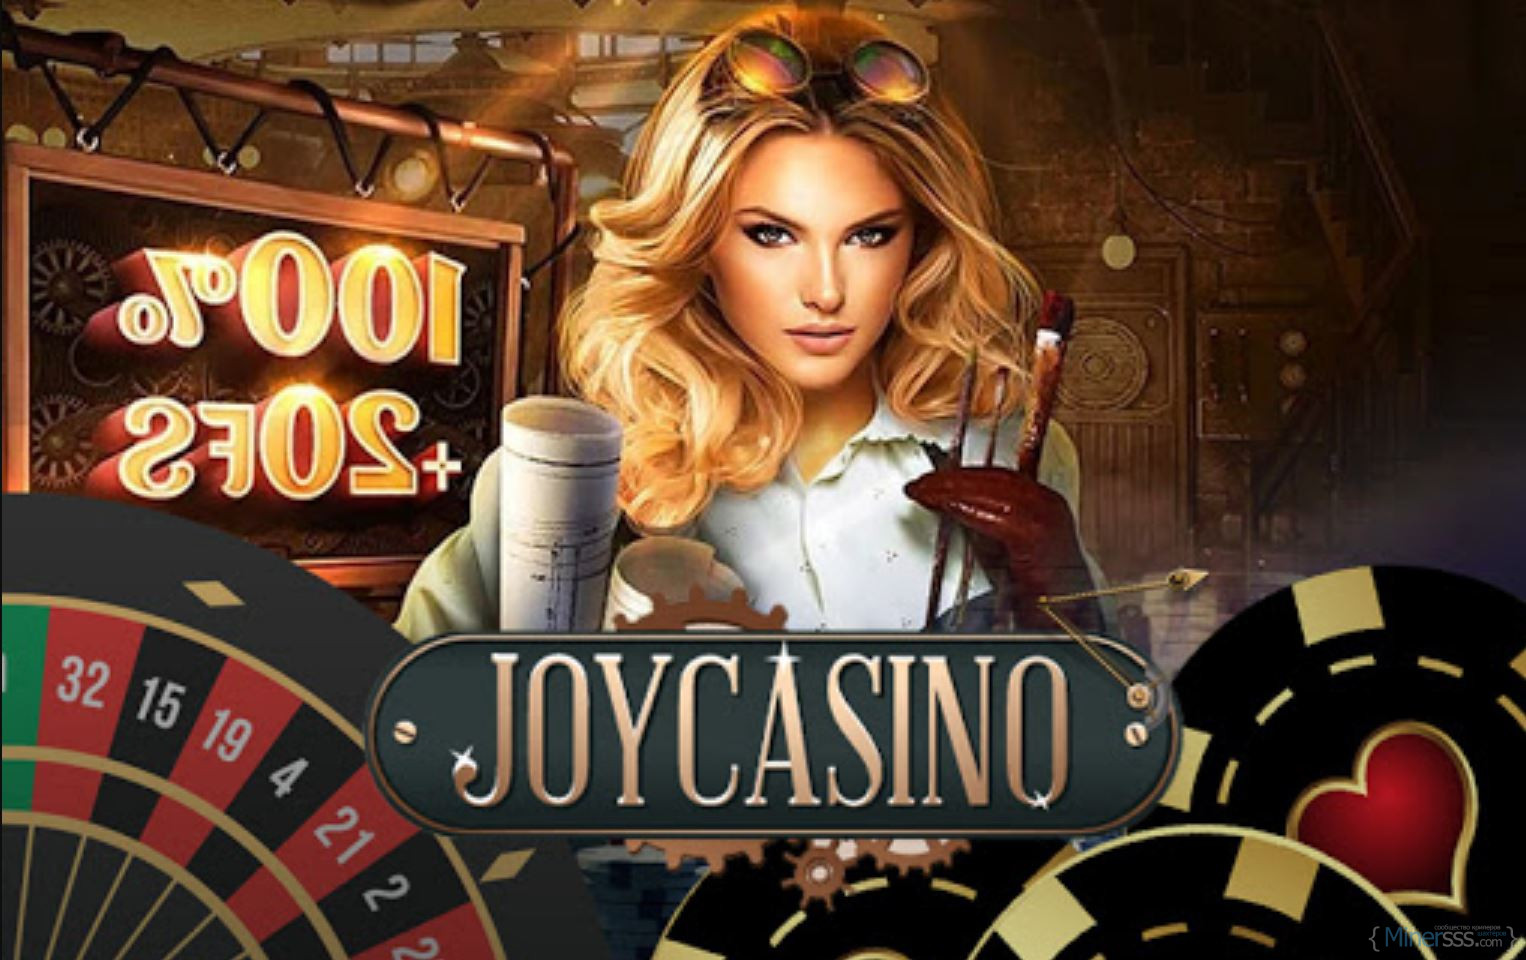 Joycasino 377joycasino top. Реклама казино. Джой казино. Самое престижное казино.